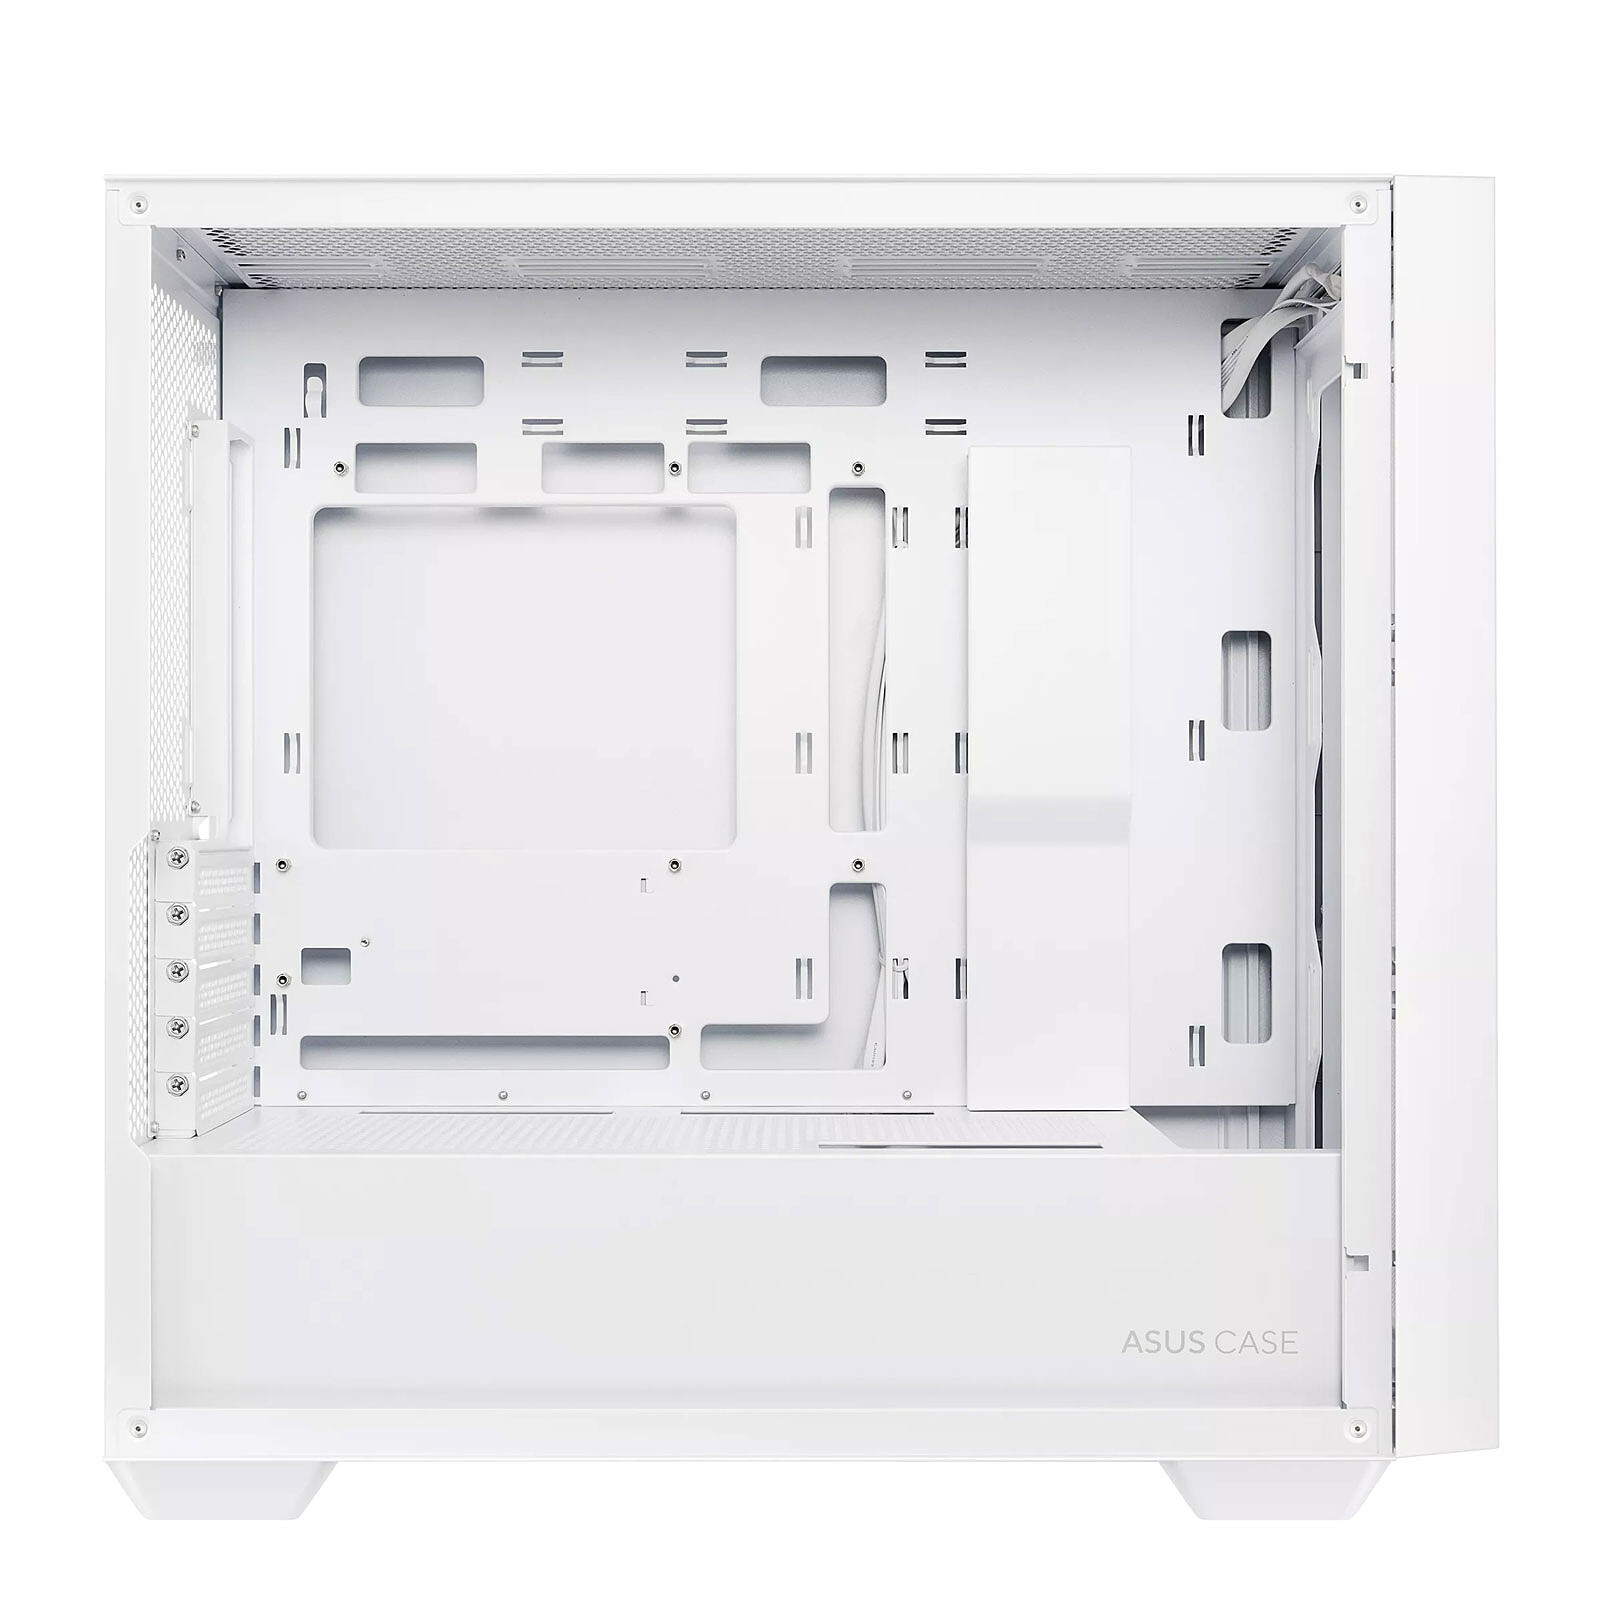 ASUS Prime AP201 - Blanc - Boîtier PC - Garantie 3 ans LDLC